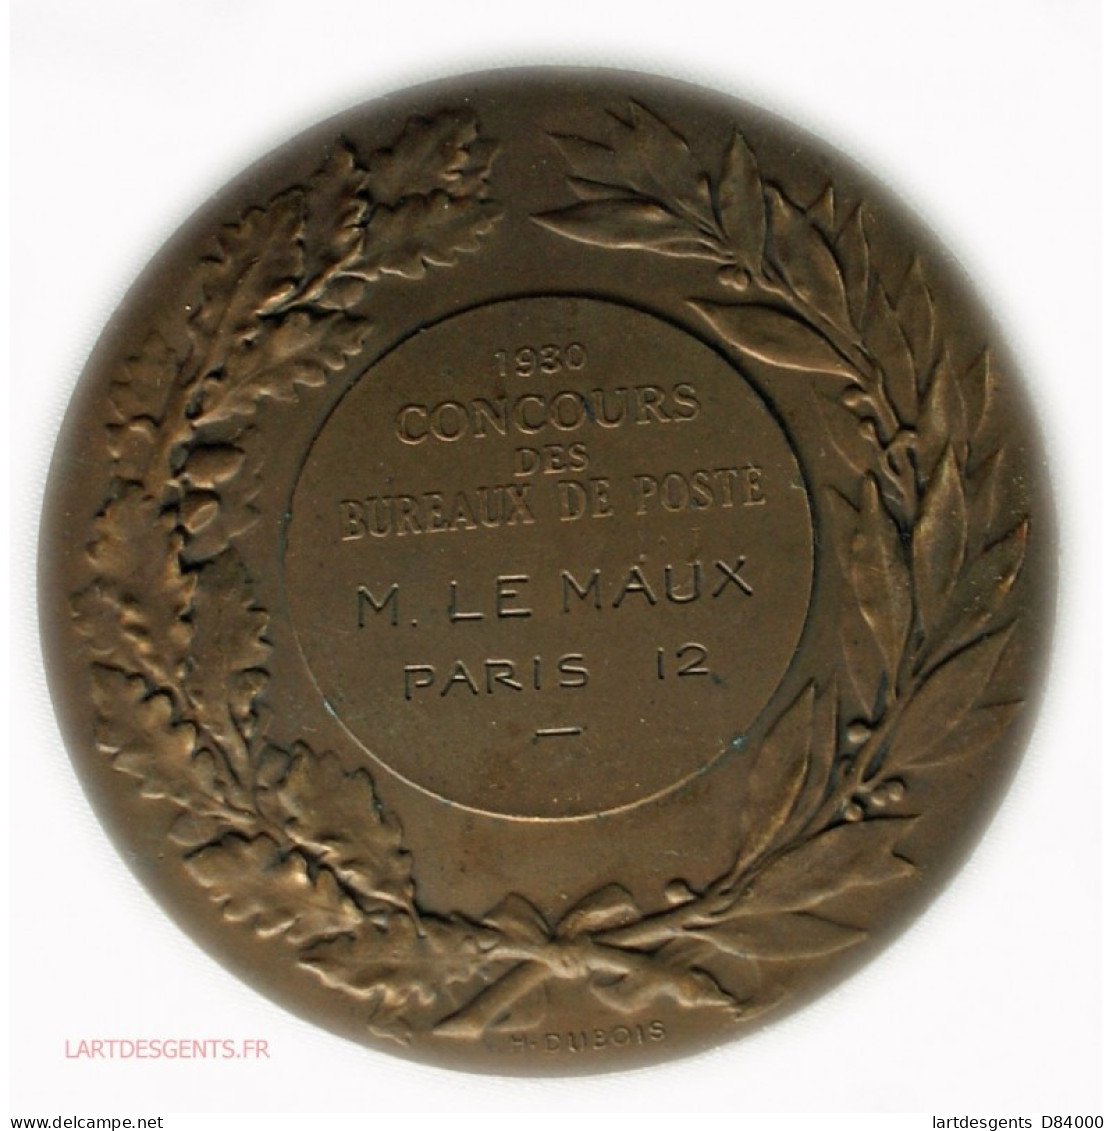 Rare Médaille Concours Des Bureaux De Poste Paris 12 Par Daniel DUPUIS - Adel